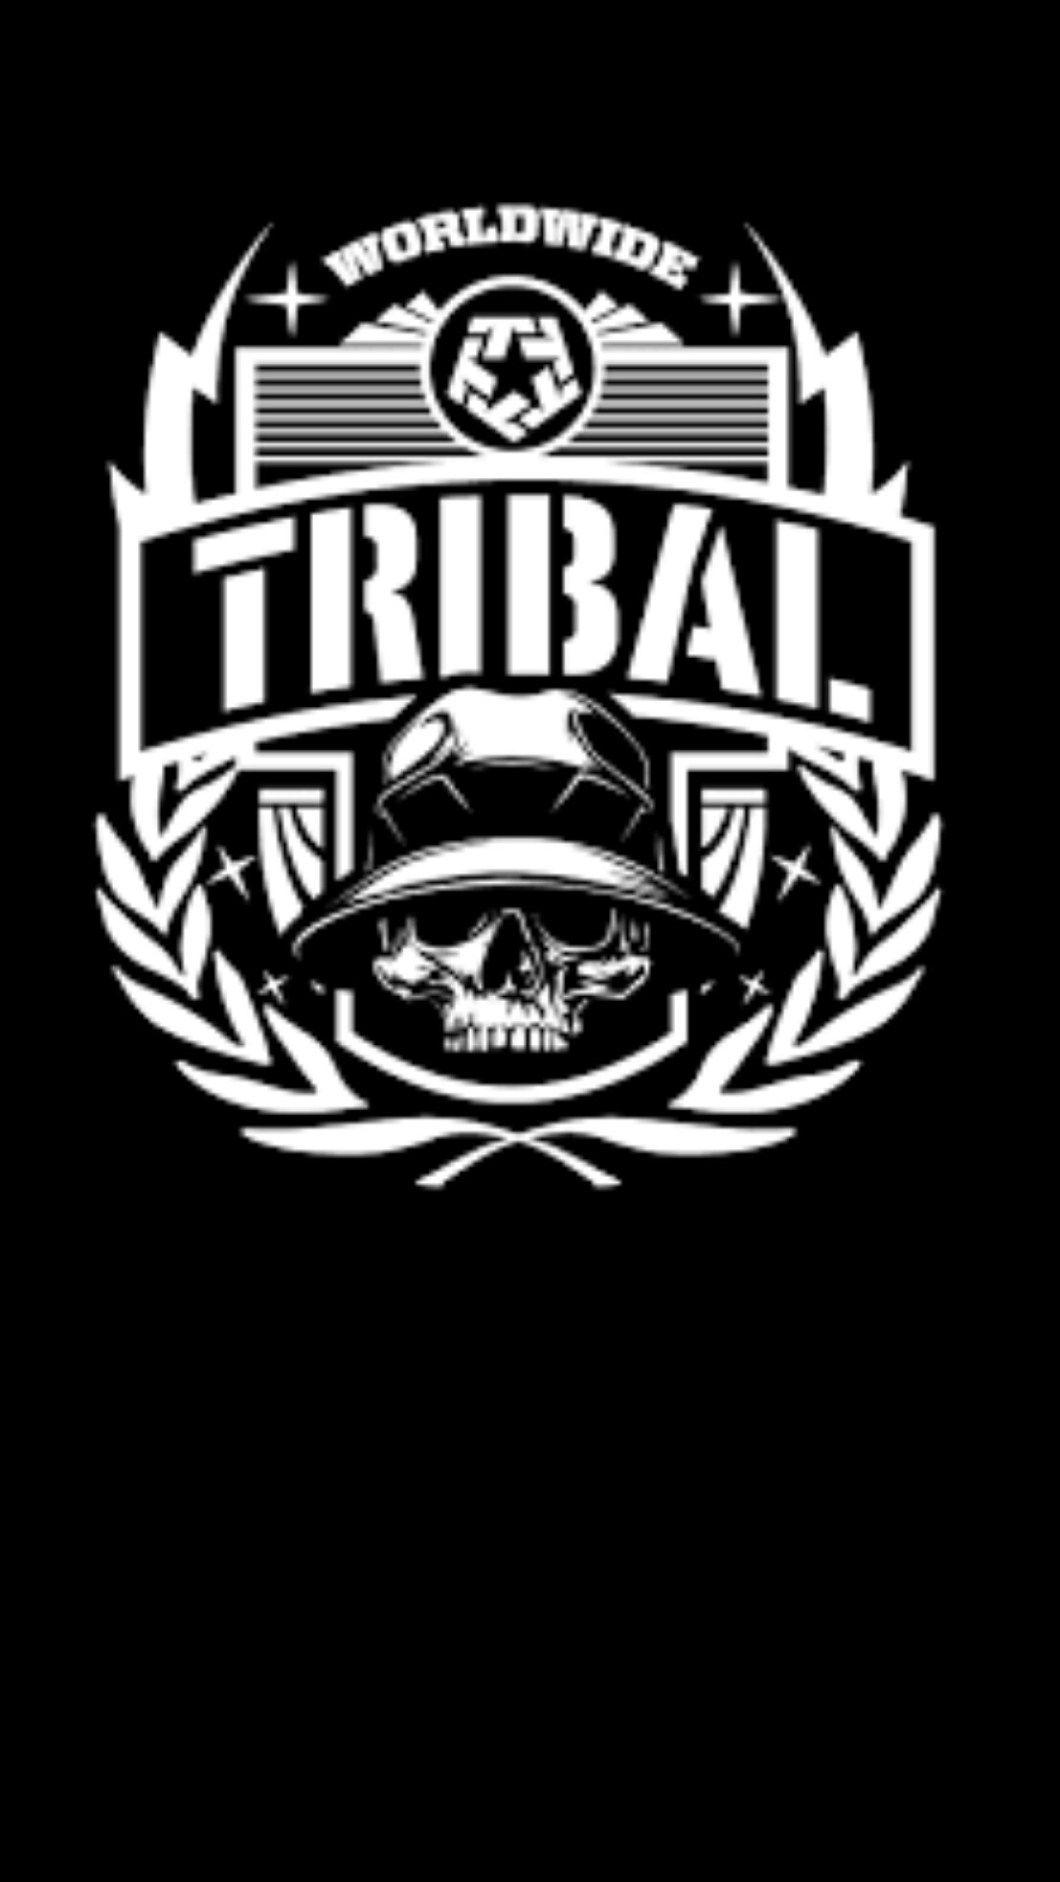 tribal gear logo wallpaper